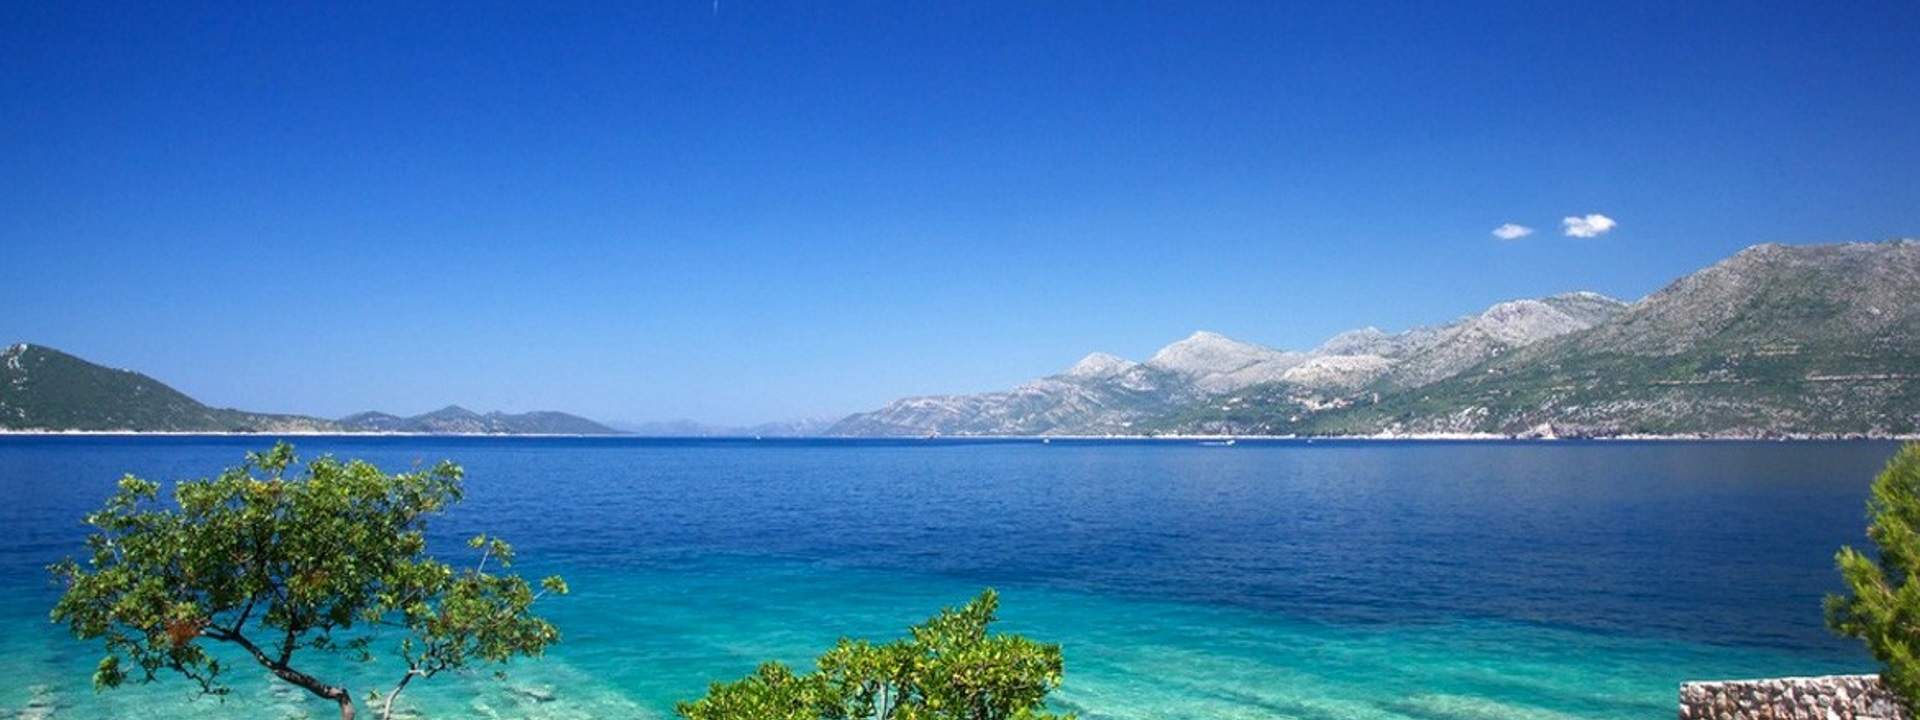 Croisière historique depuis Dubrovnik, la perle de l'Adriatique !